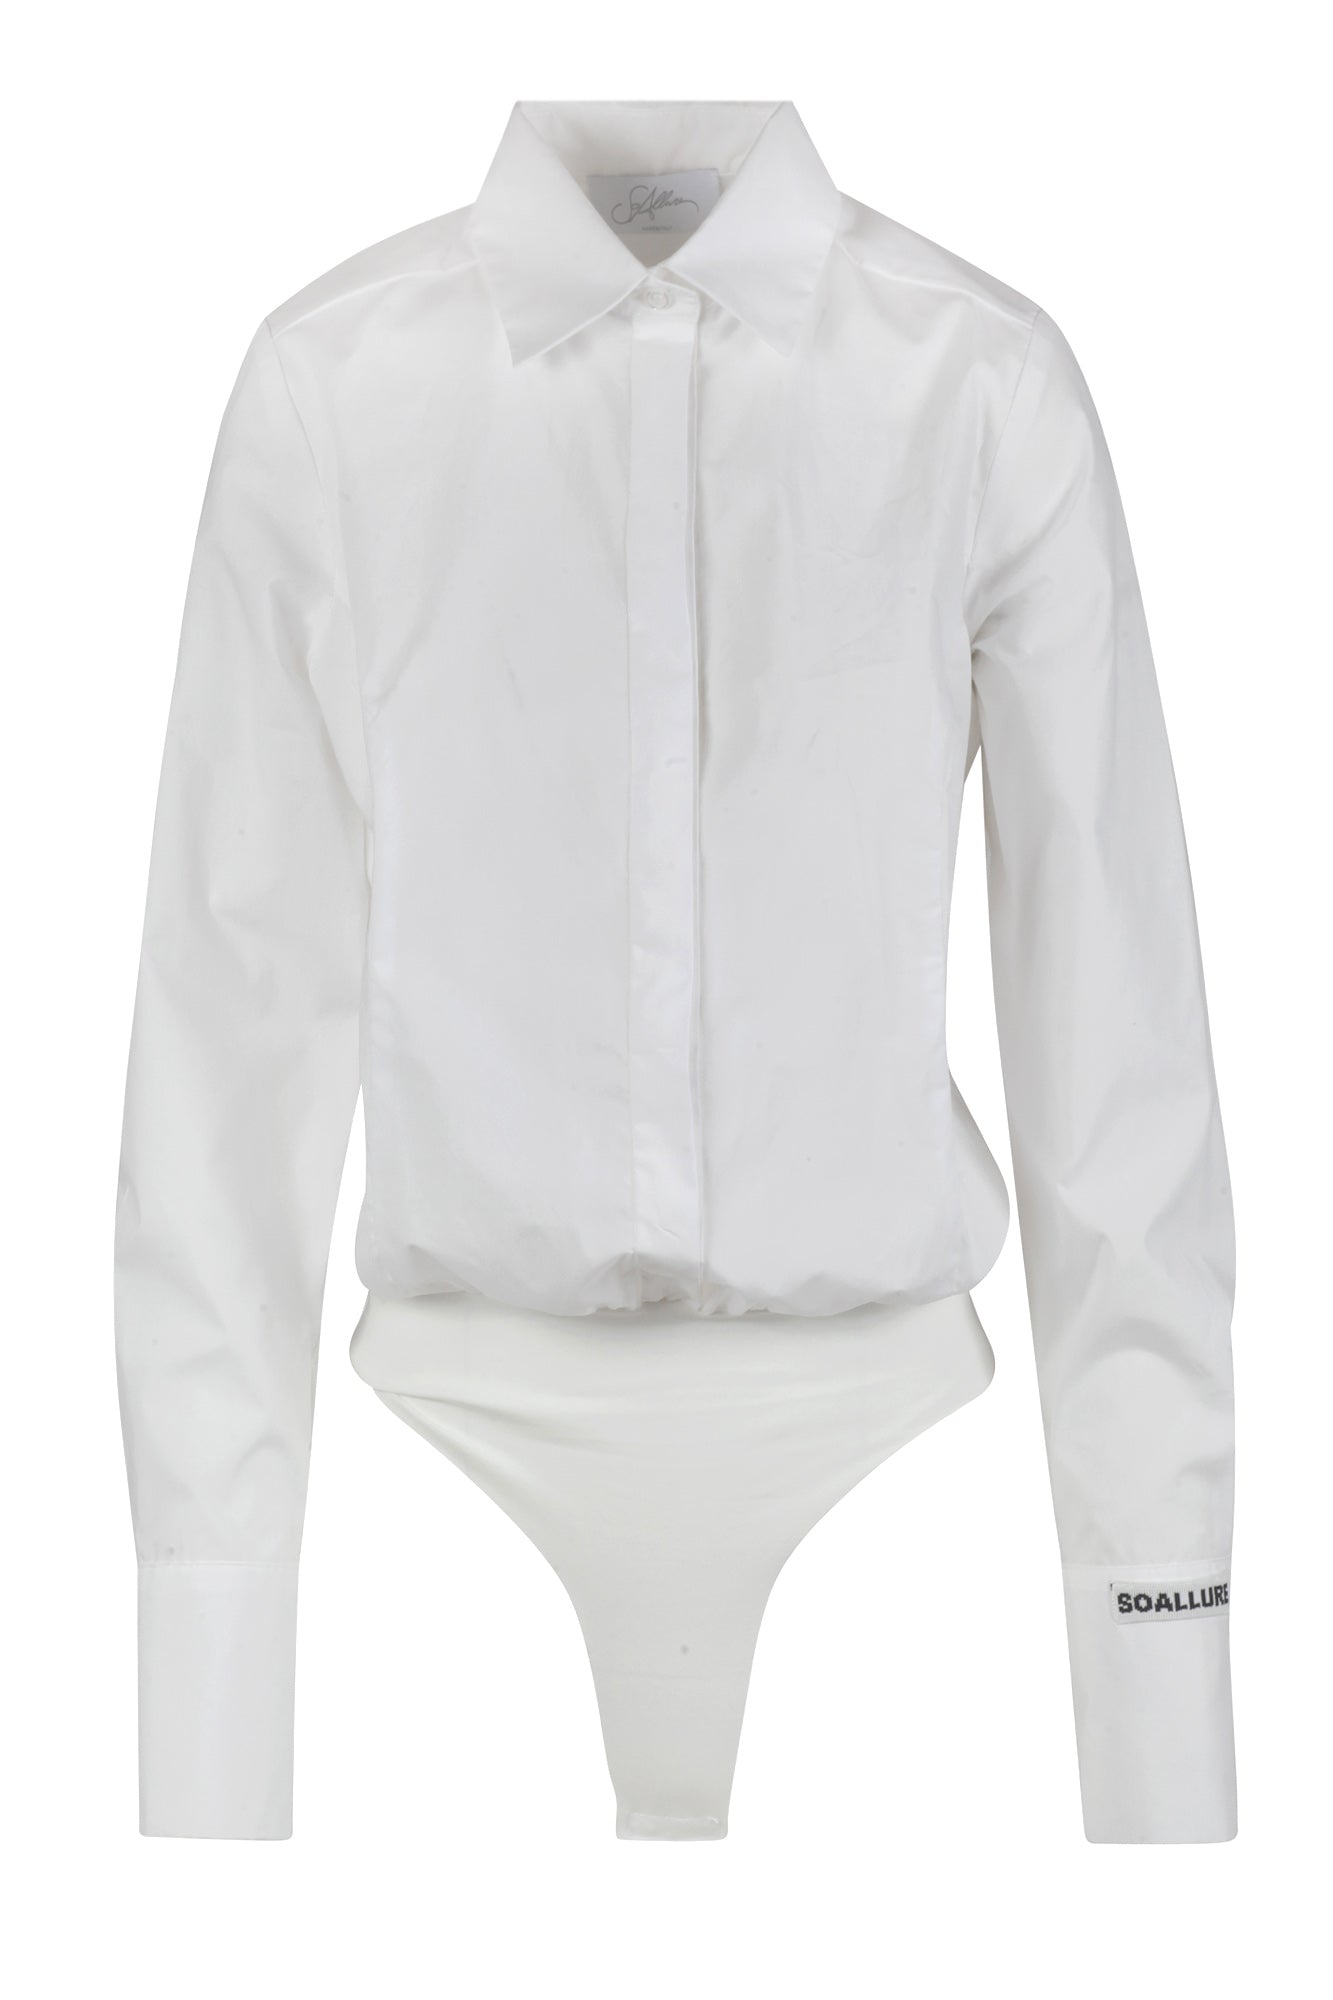 So Allure - Camicia/Body - 431615 - Bianco